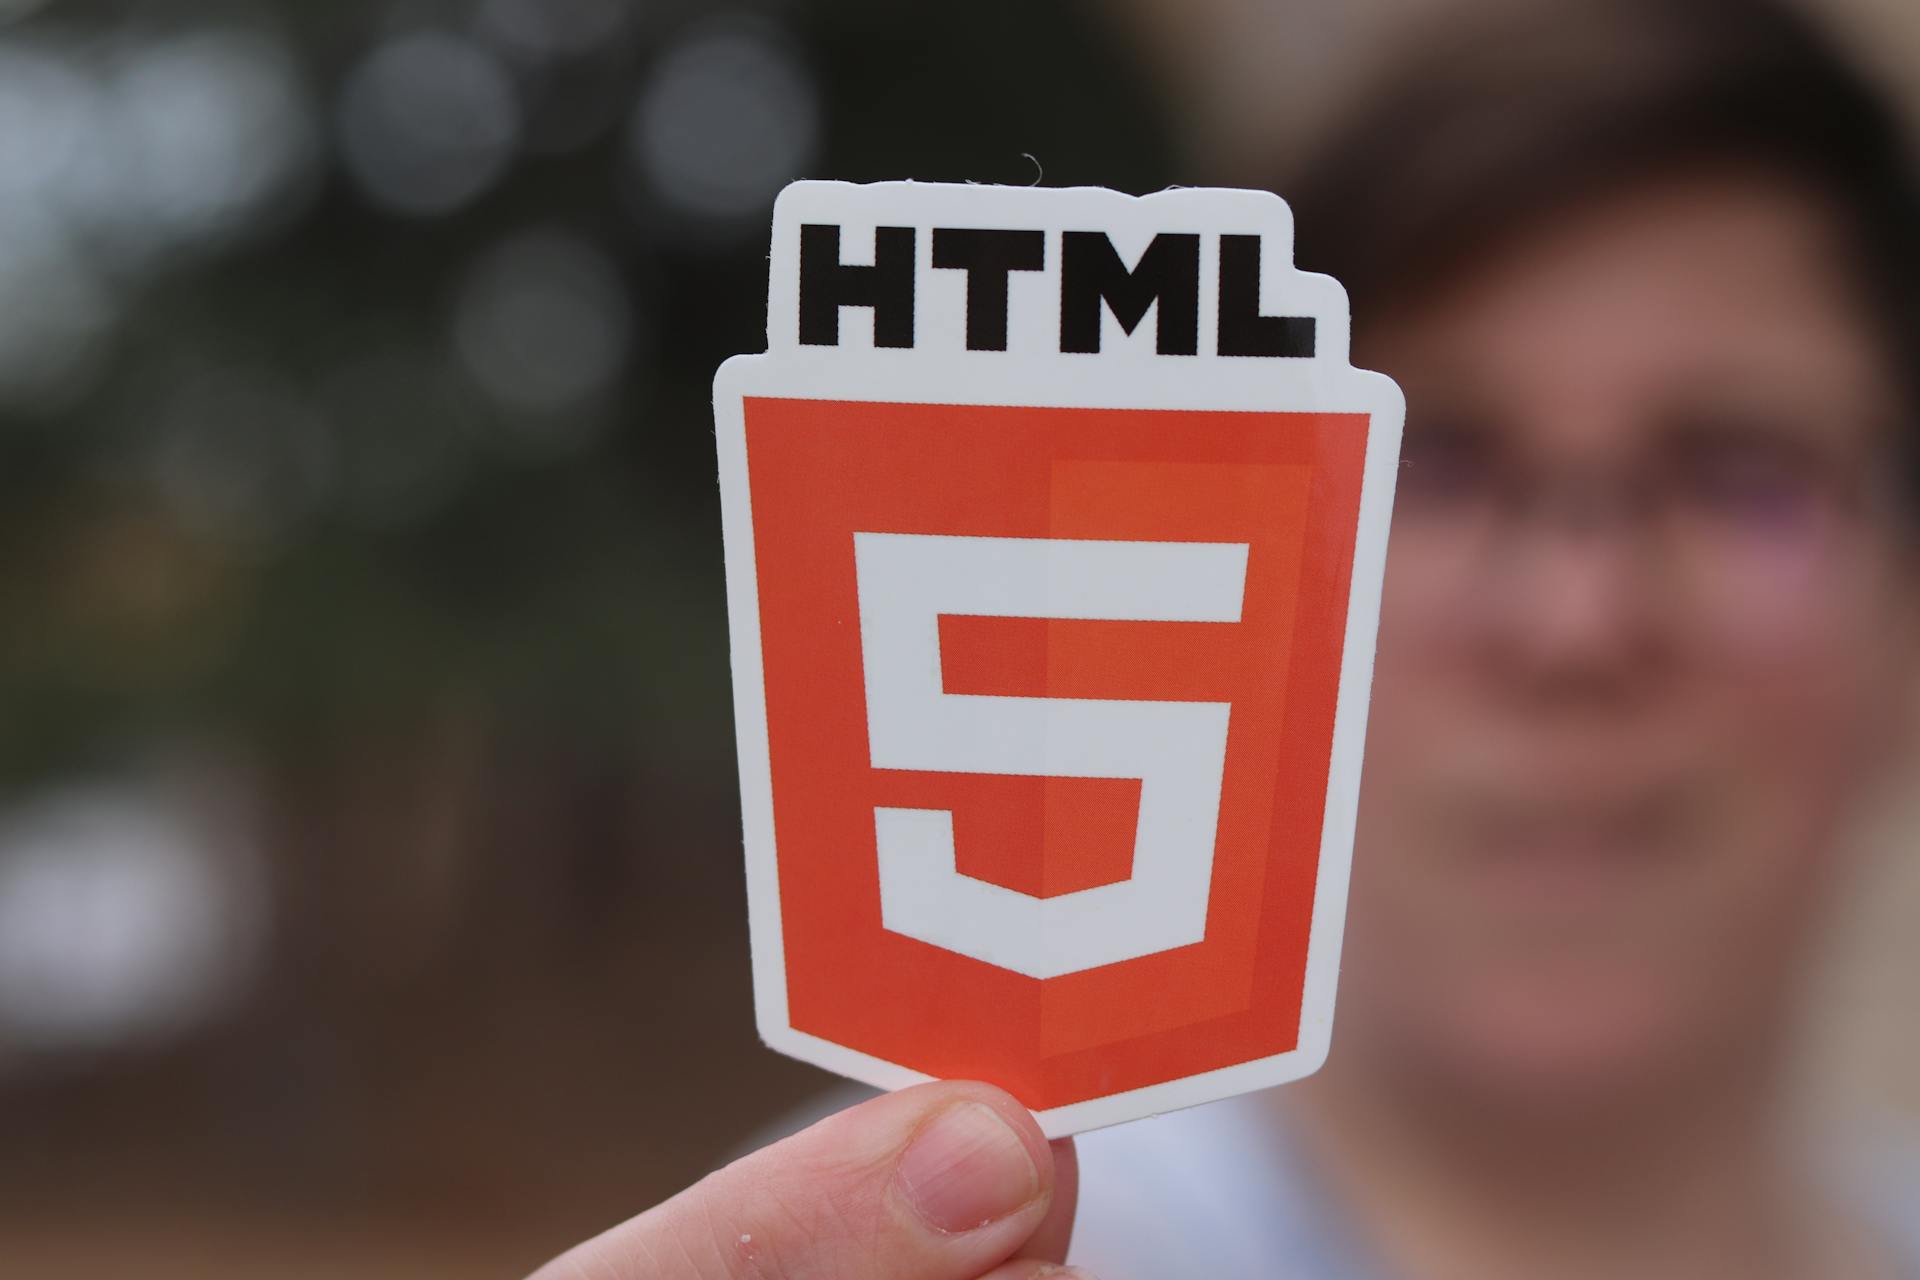 etiqueta HTML5 